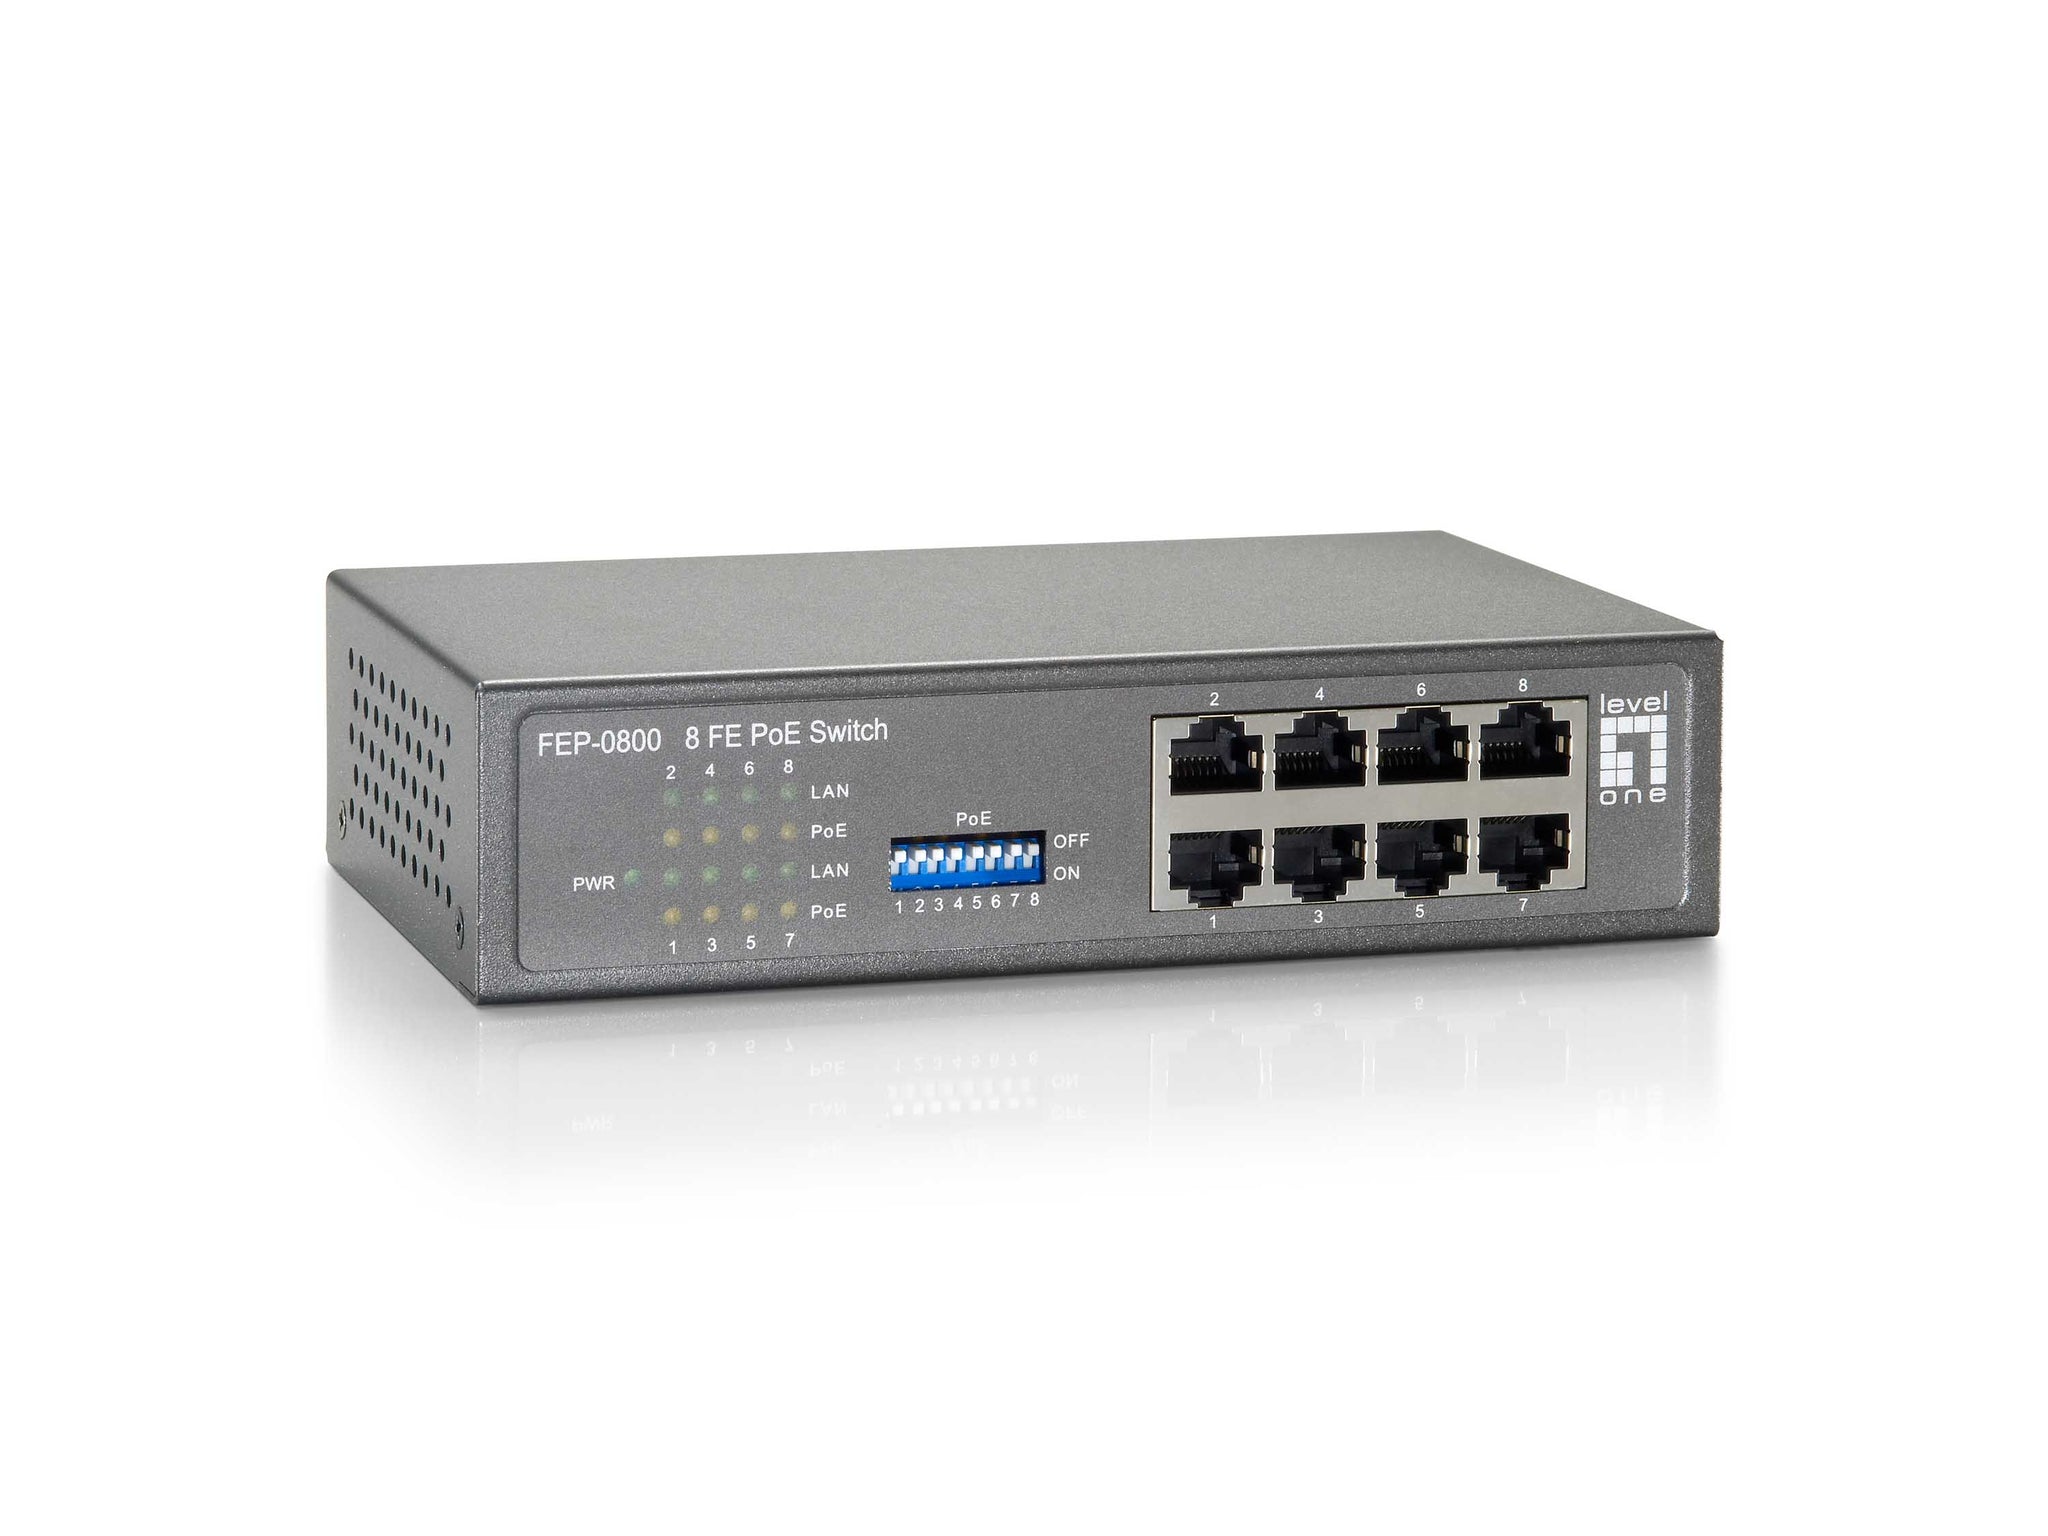 FEP-0800 Conmutador PoE Fast Ethernet de 8 puertos, 8 salidas PoE